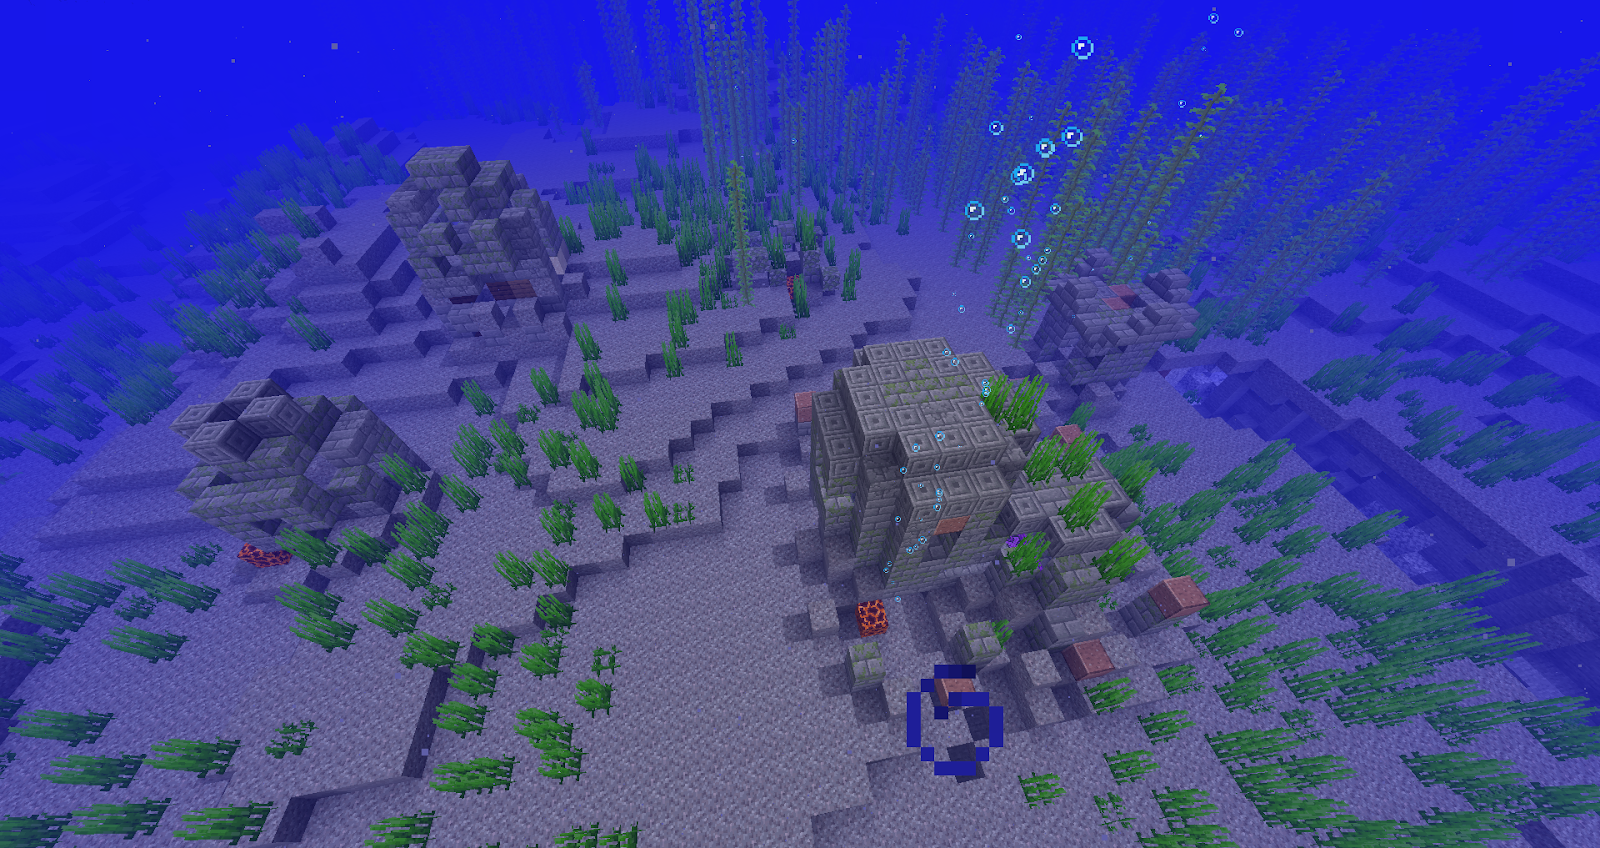 Underwater village